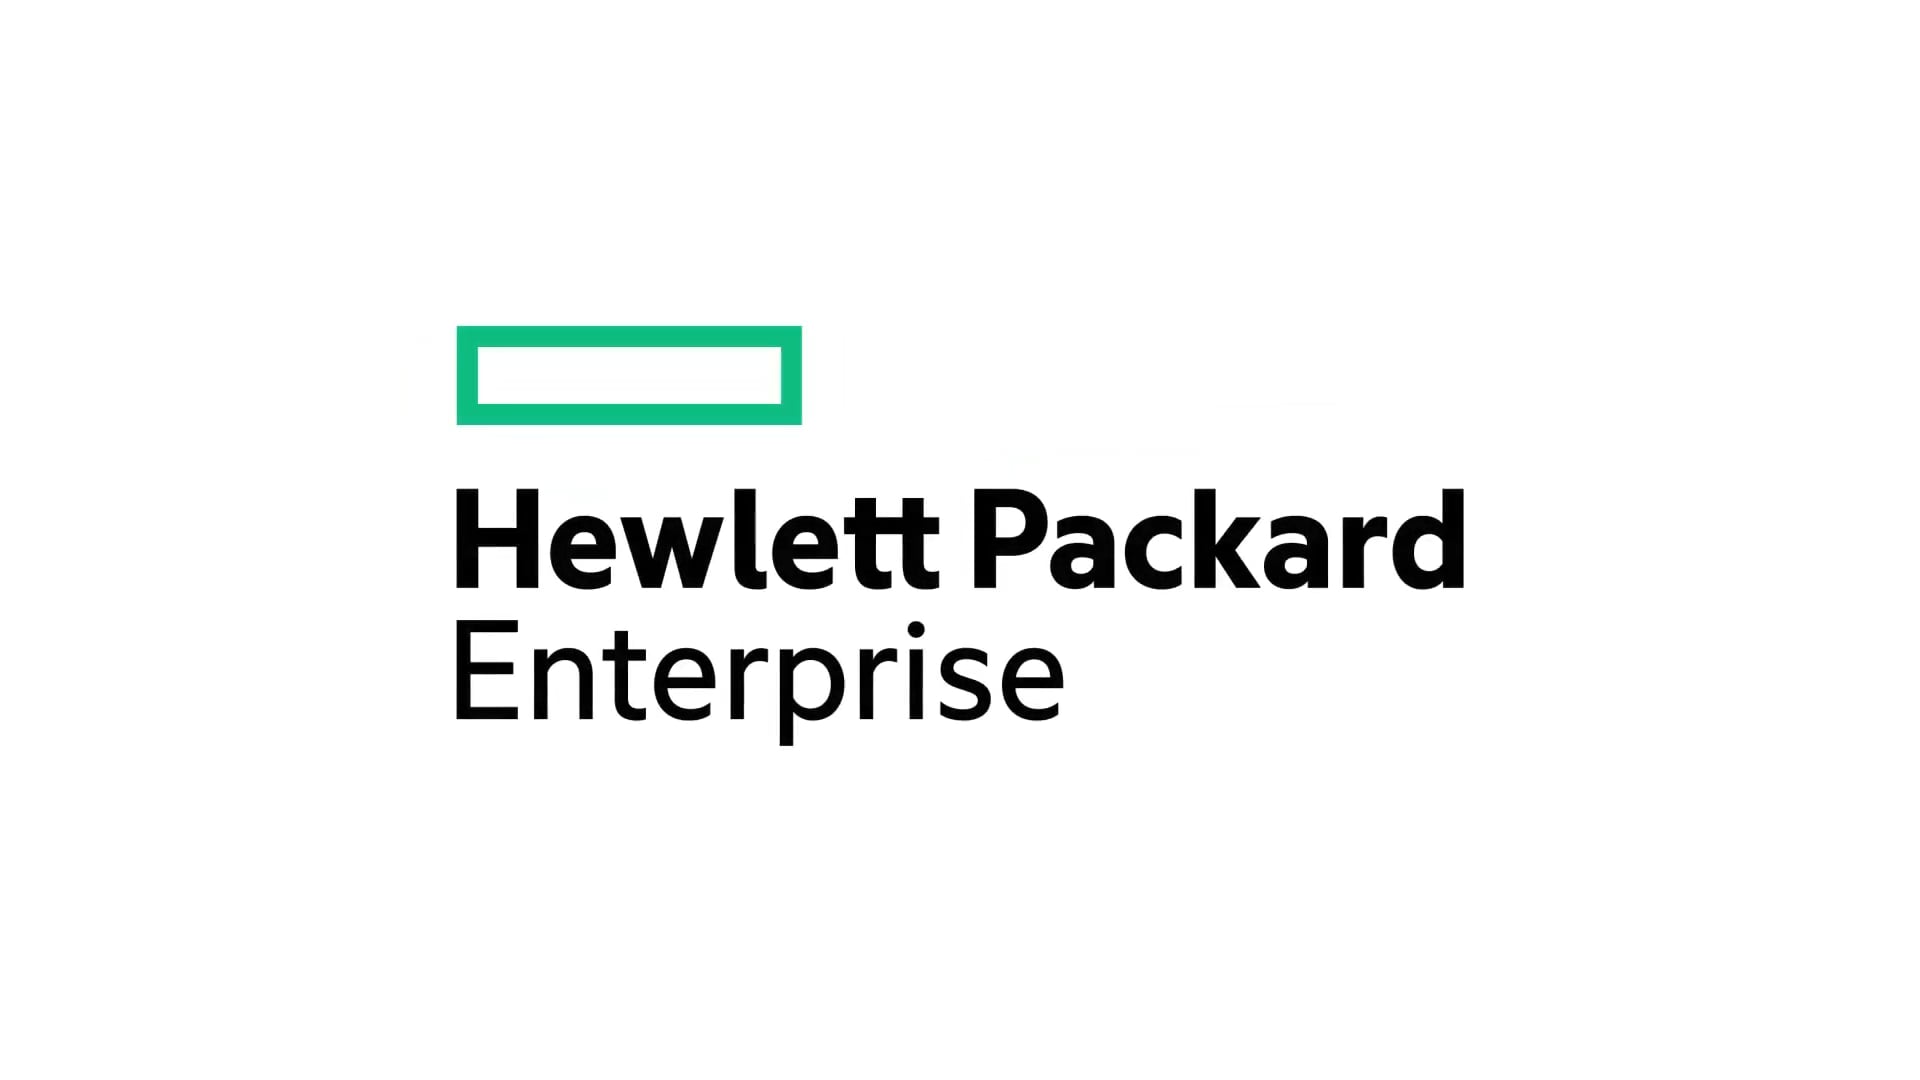 Hewlett Pakard Enterprise BETT 2018 Highlight Reel